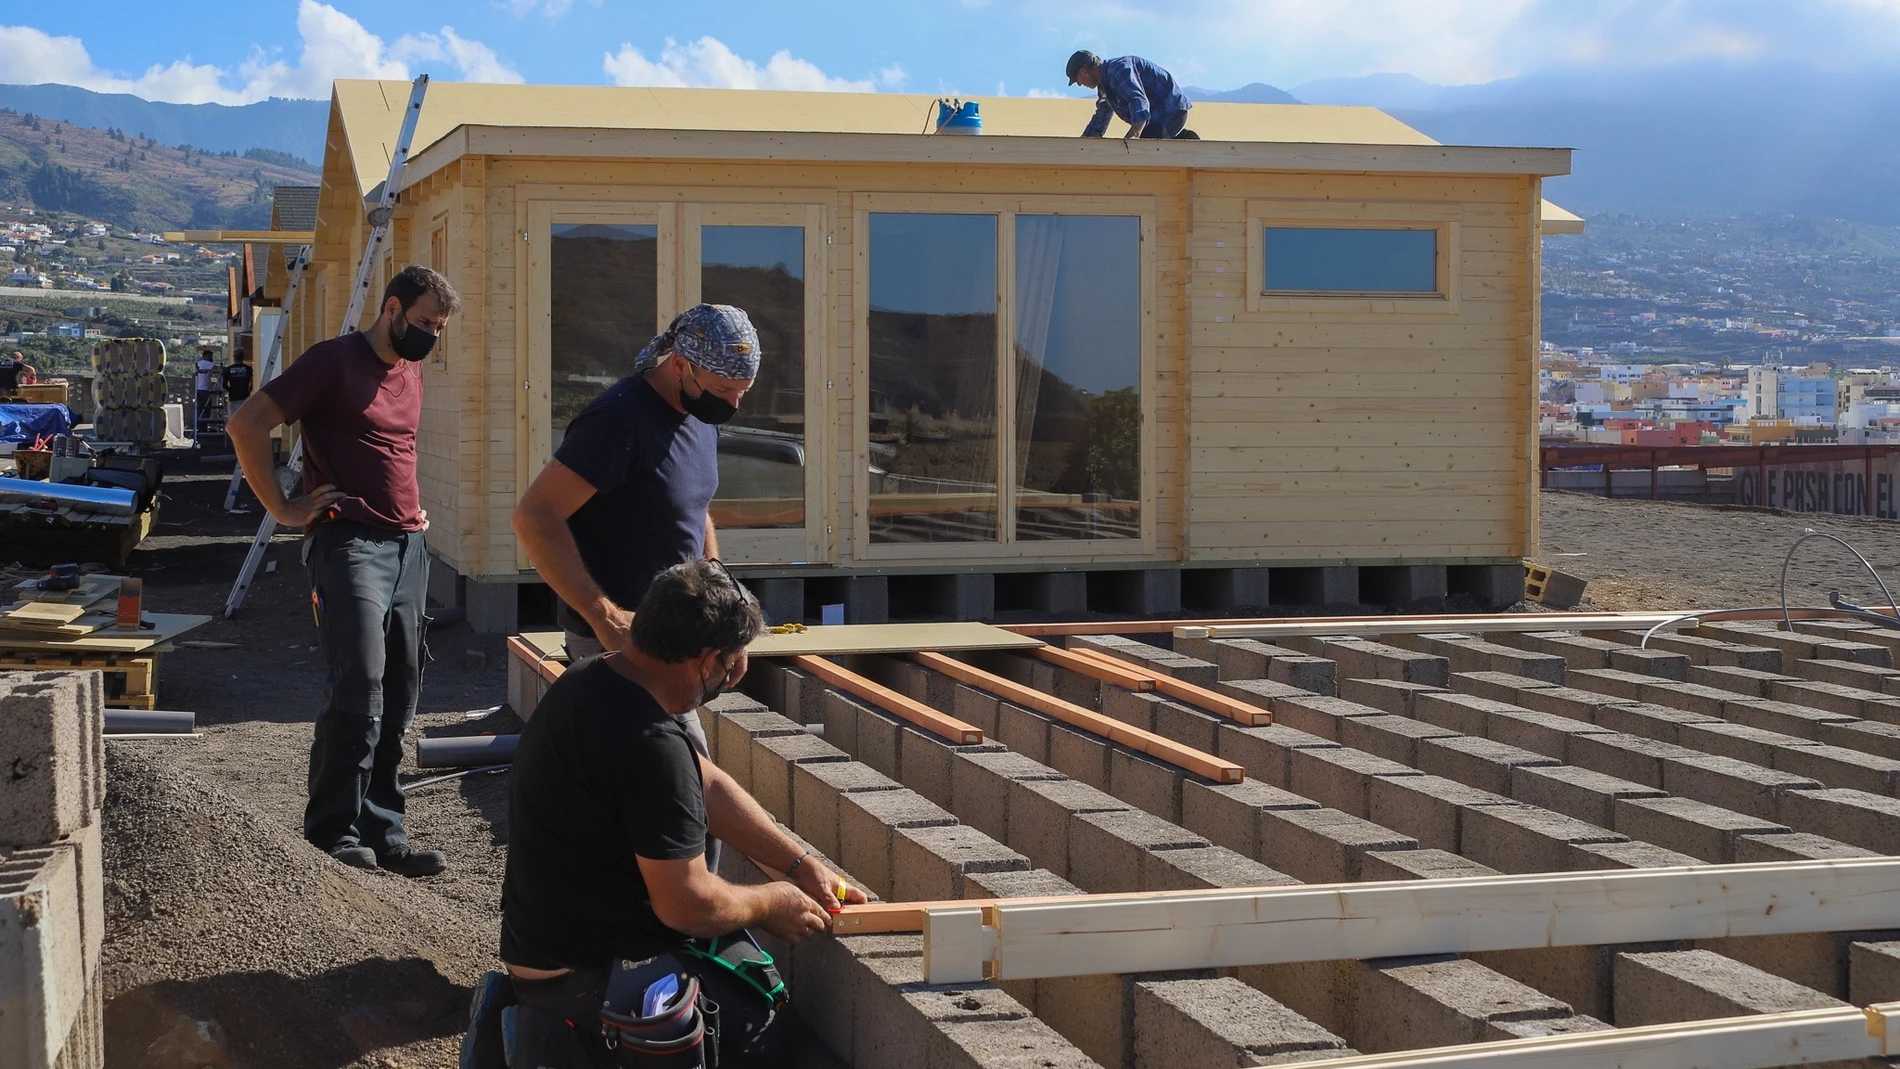 Viviendas modulares que están siendo instaladas en Los Llanos de Aridane para realojar a familias que perdieron su casa durante la erupción